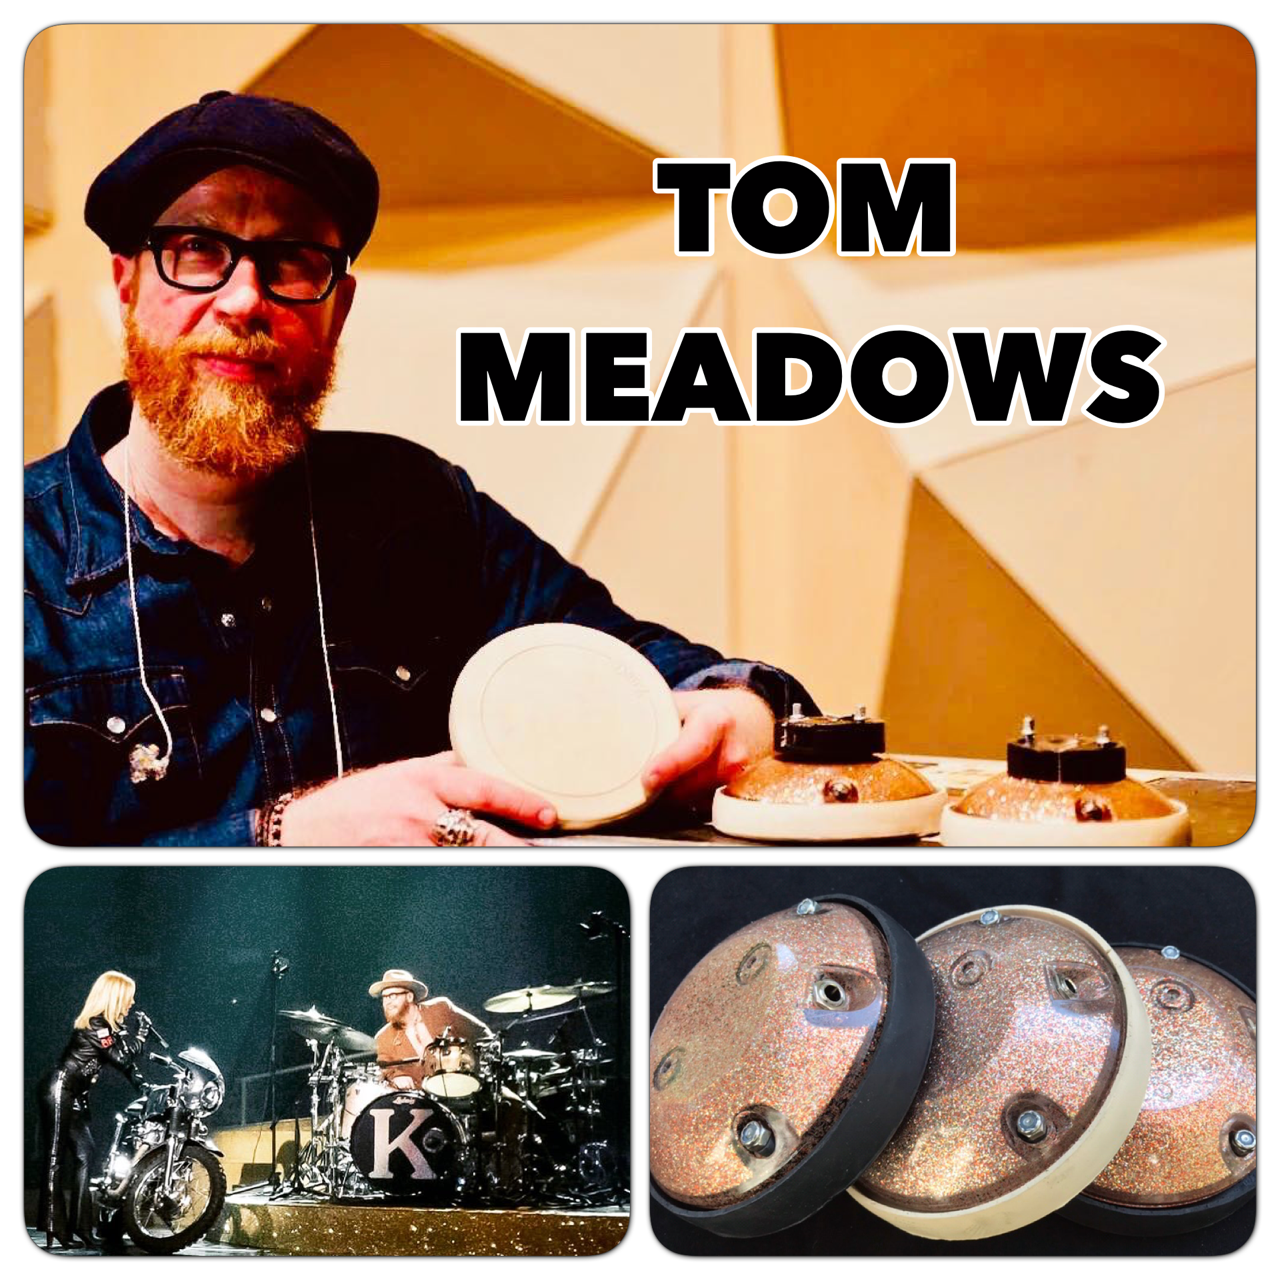 TOM MEADOWS